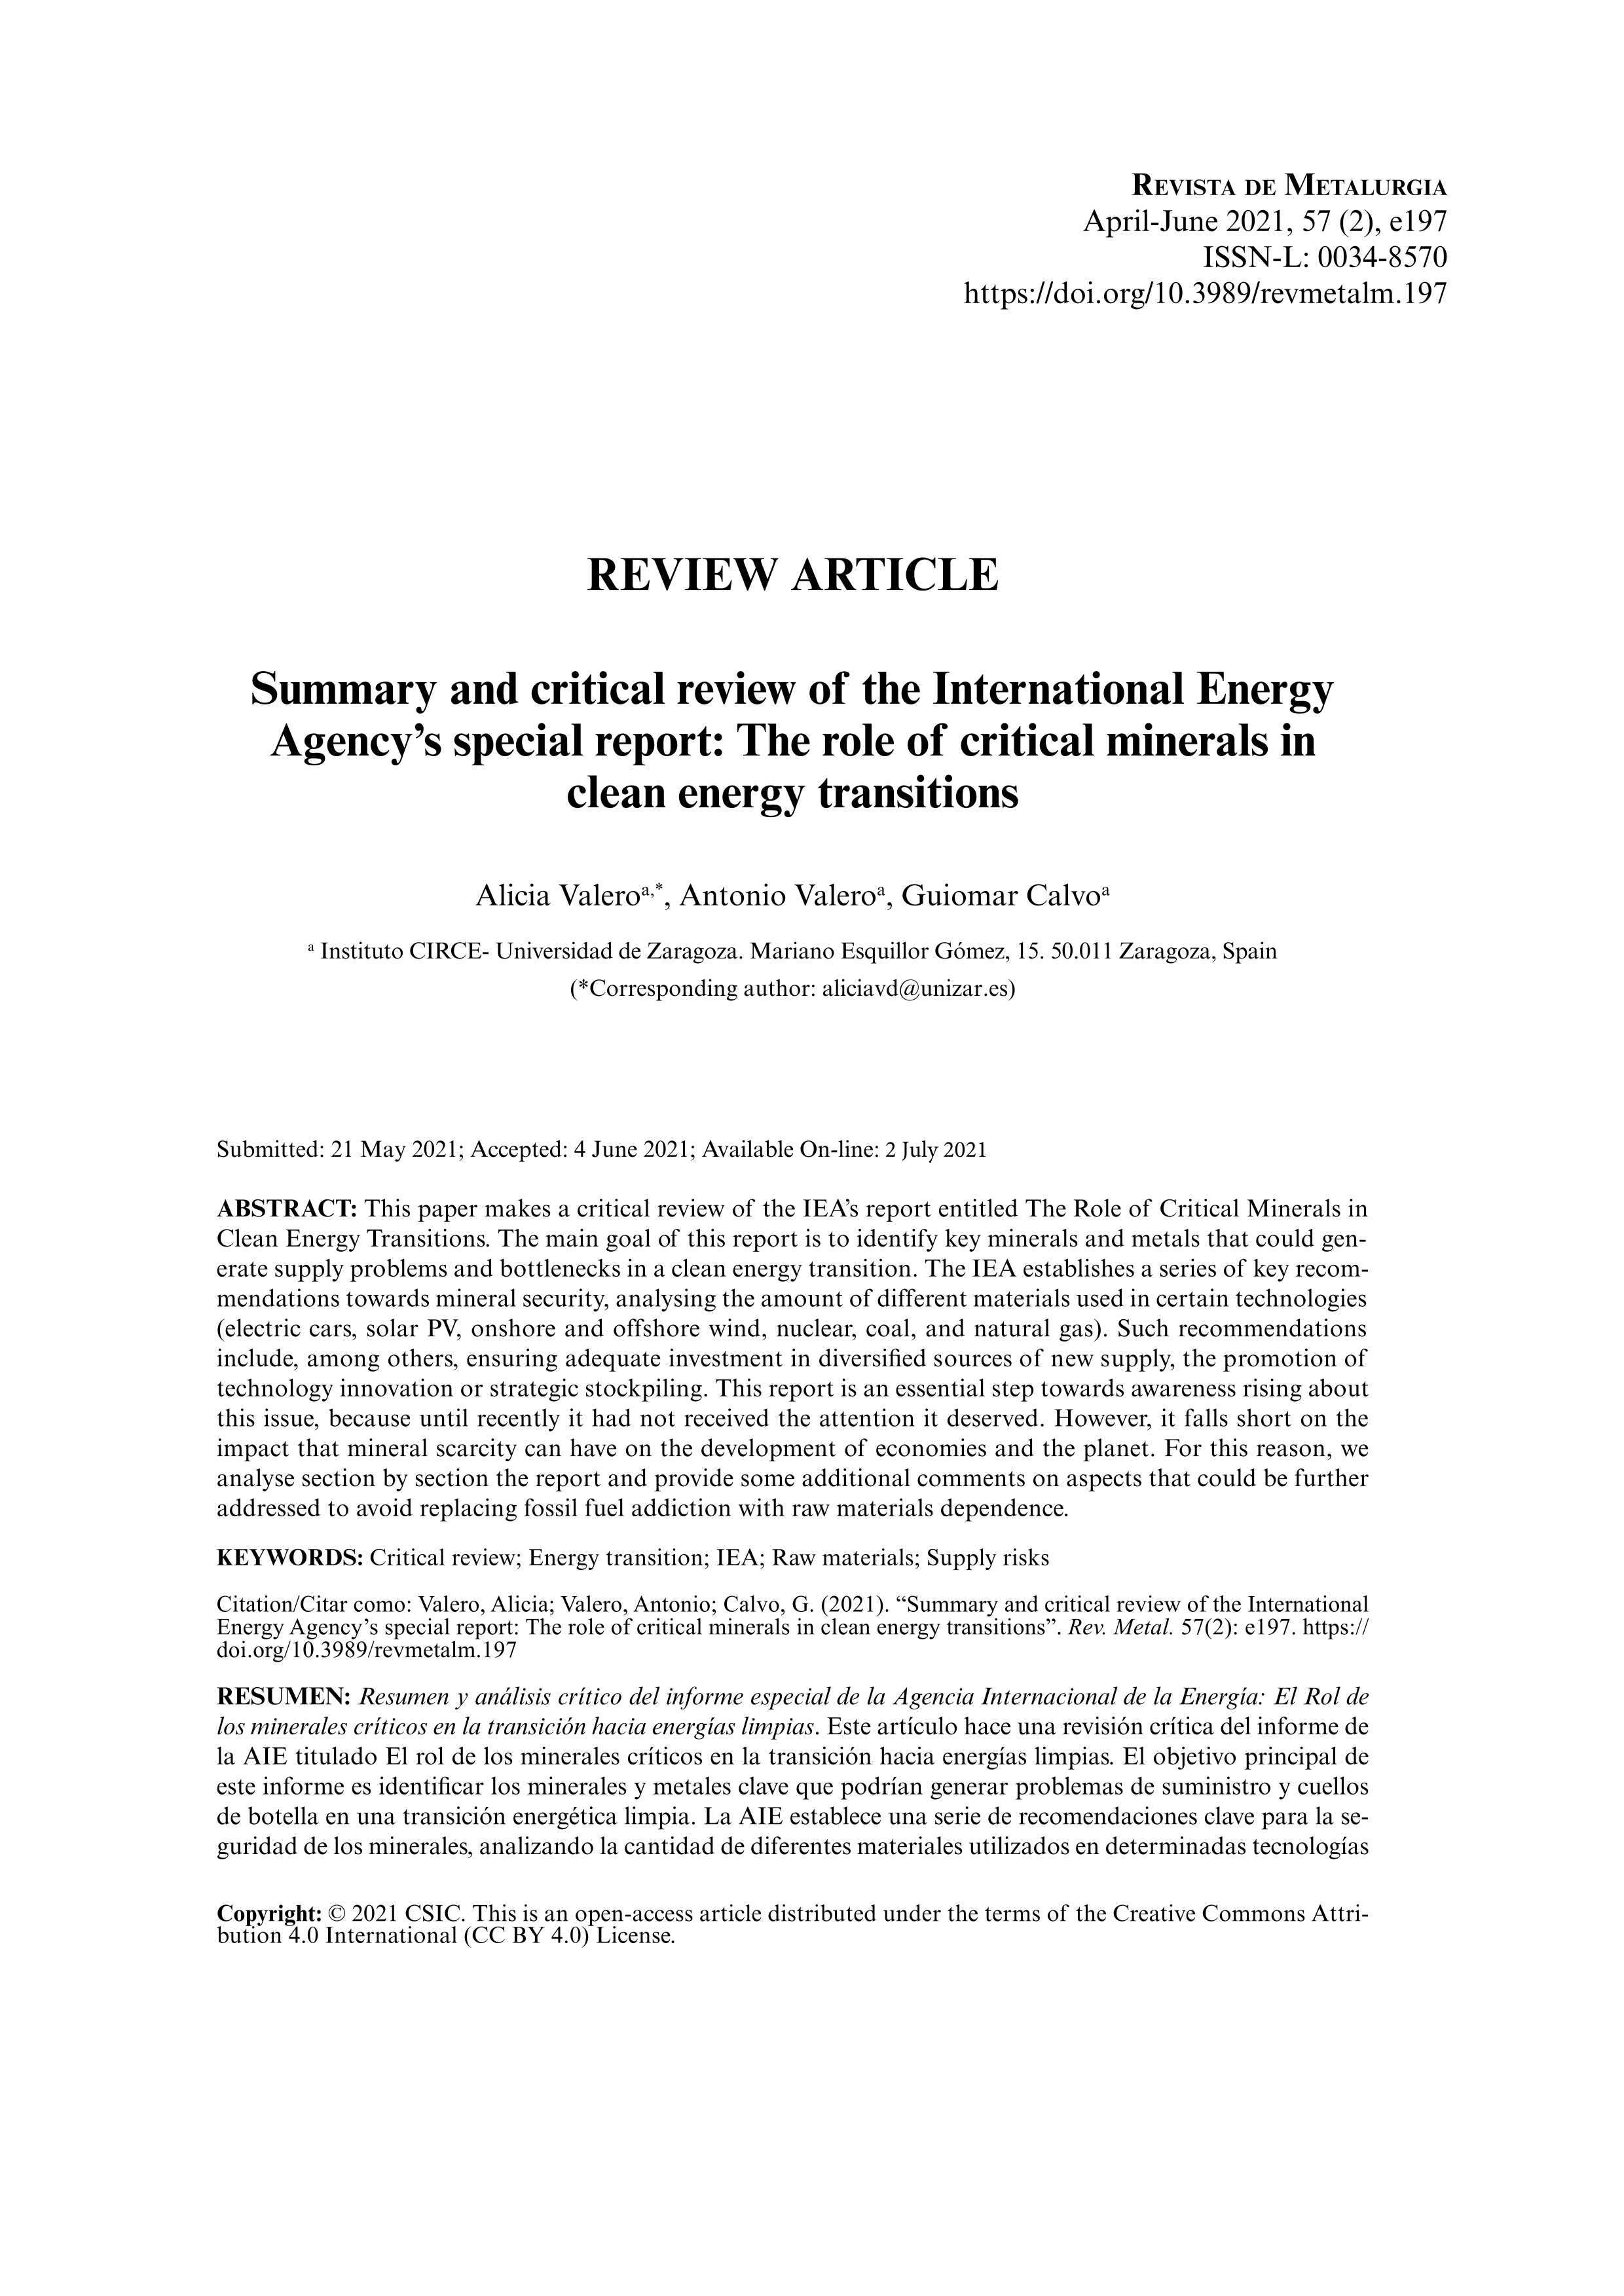 Resumen y análisis crítico del informe especial de la Agencia Internacional de la Energía: El Rol de los minerales críticos en la transición hacia energías limpias